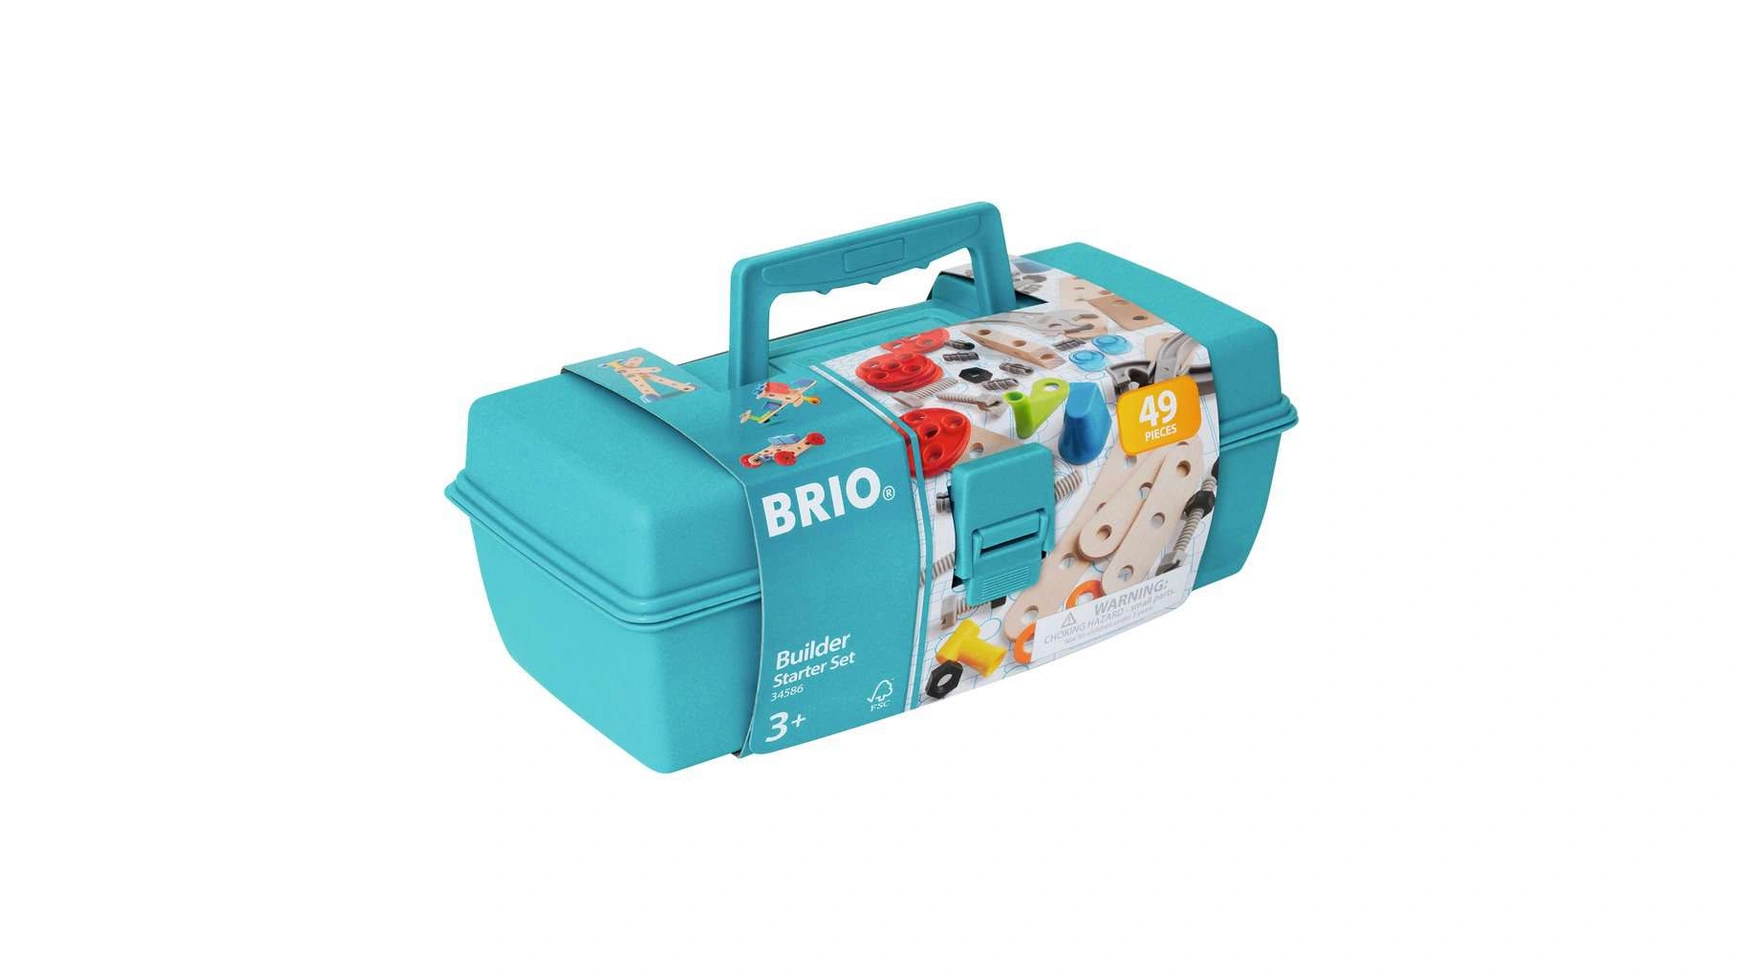 Brio Builder Коробка, 49 предметов Креативный конструктор из Швеции